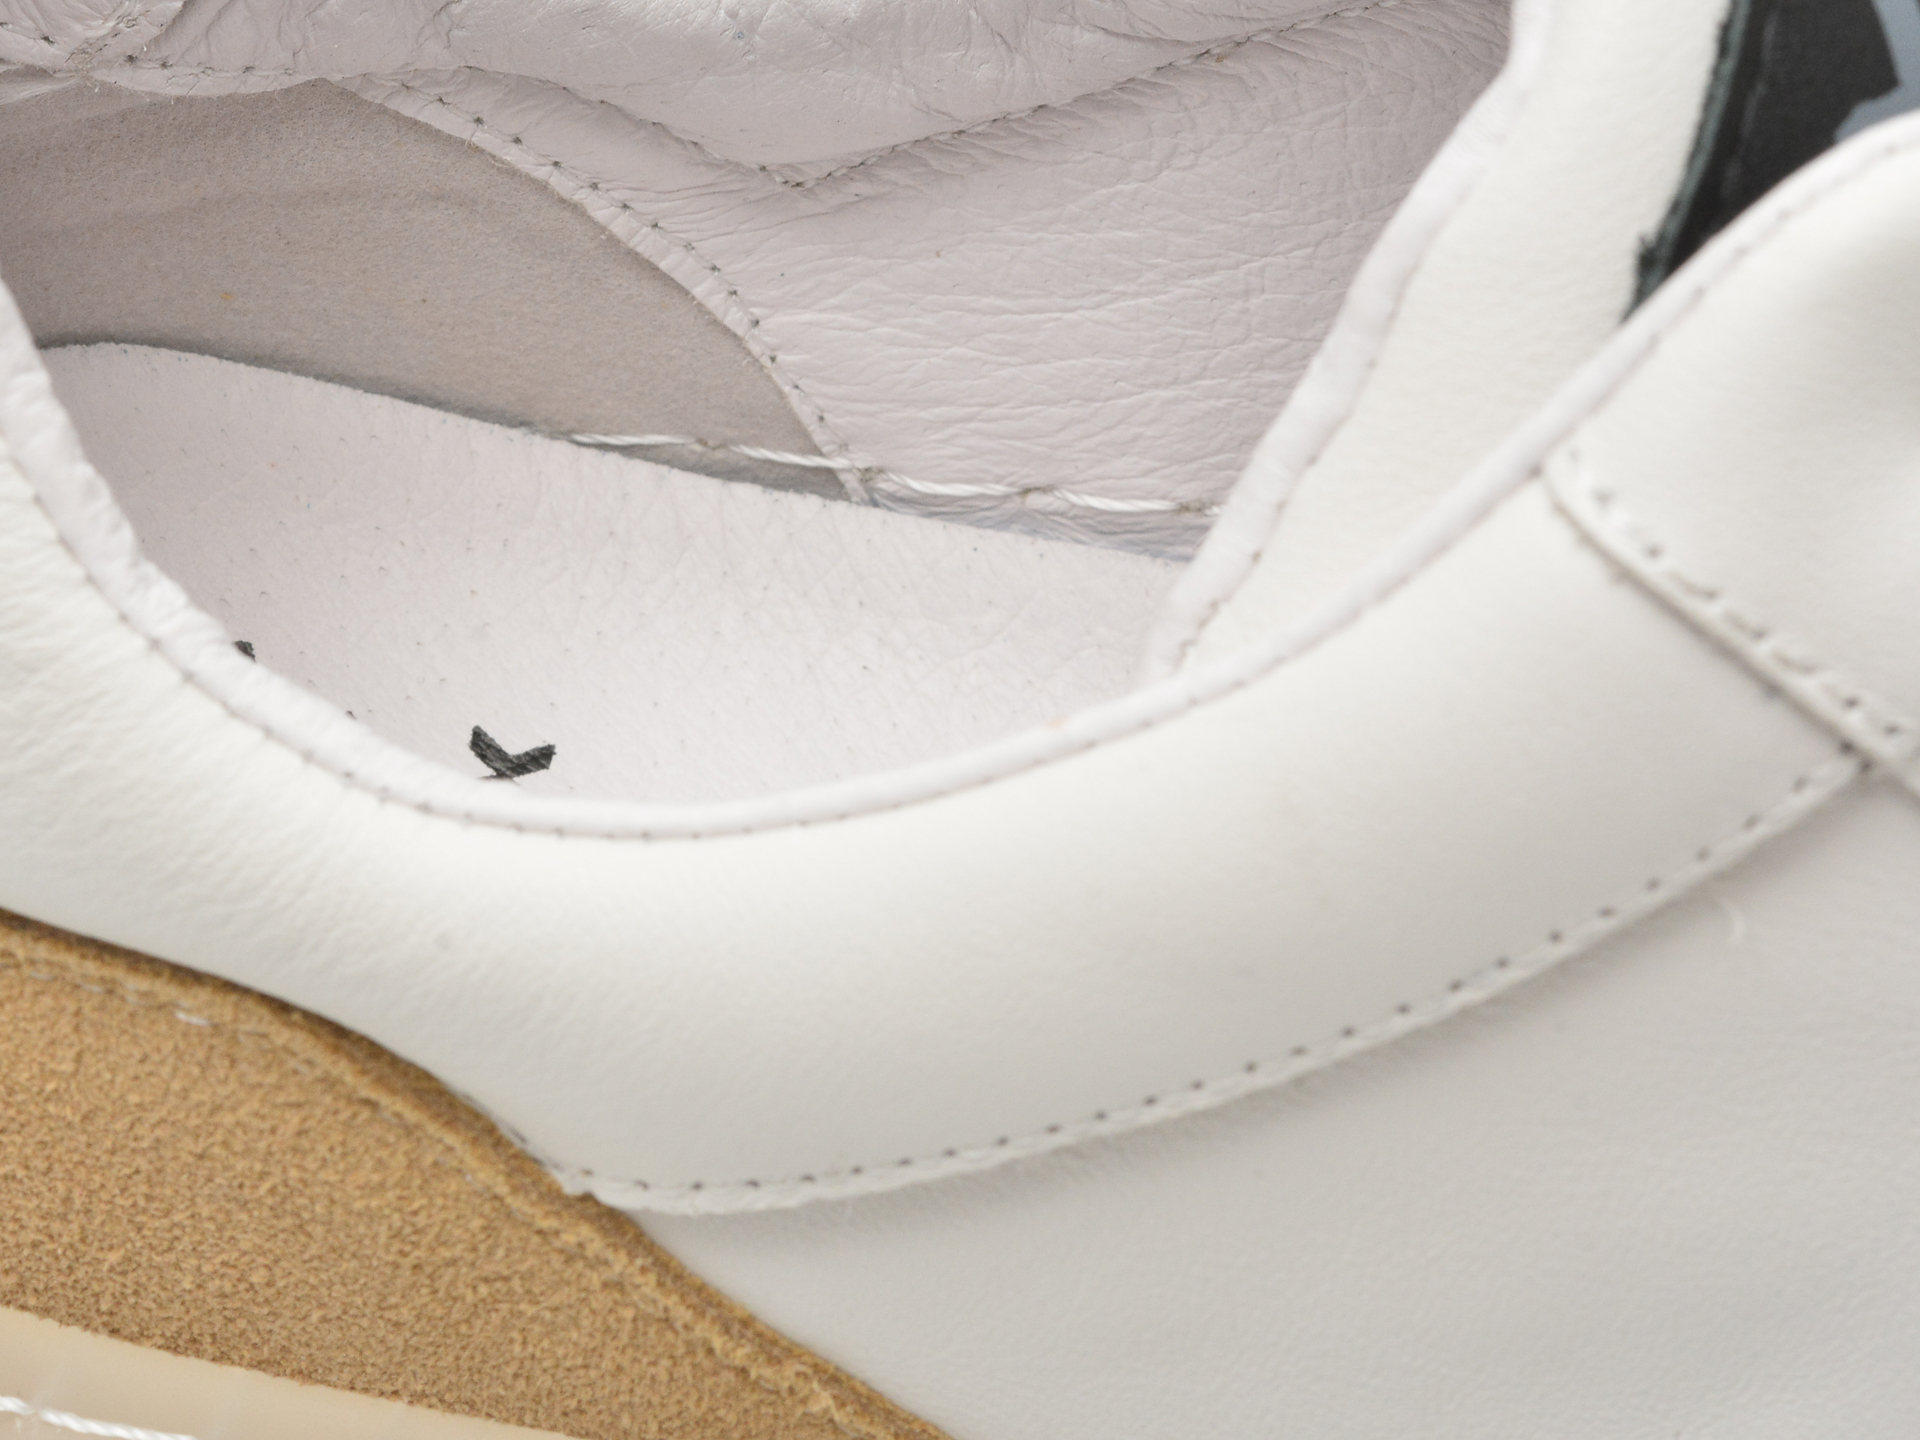 Poze Pantofi sport GRYXX albi, LN119, din piele naturala